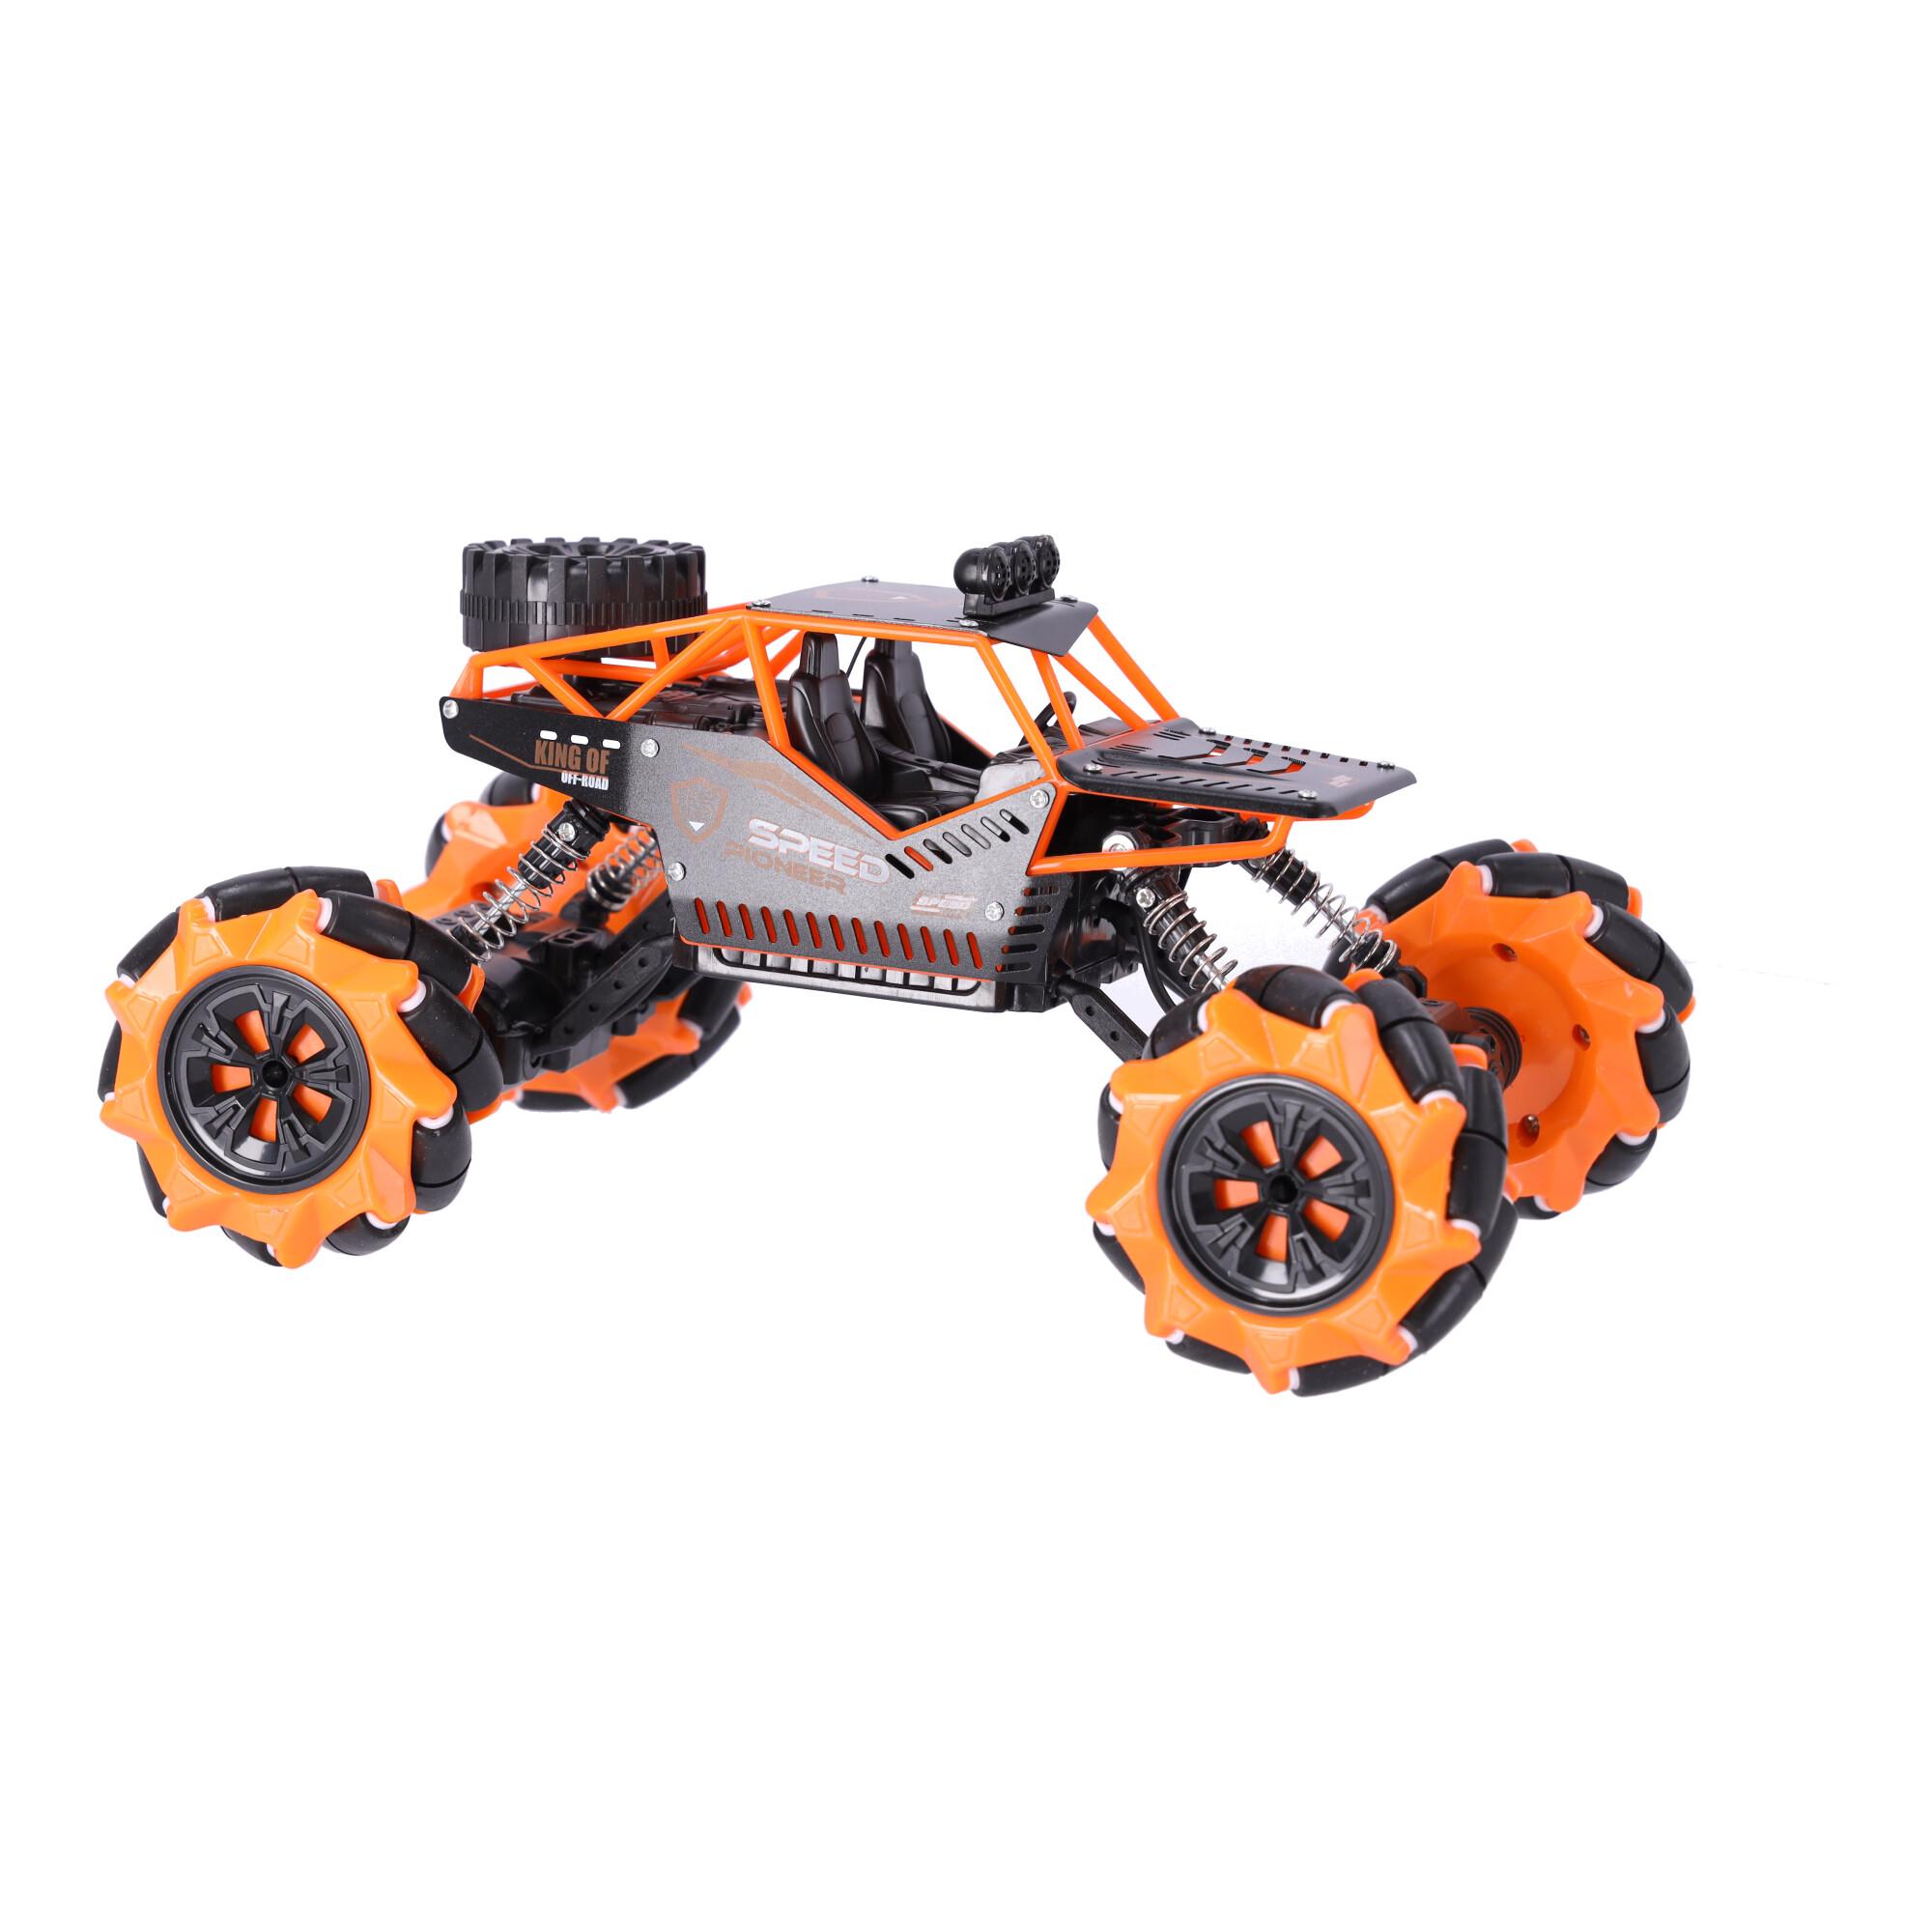 UKC015A remote control stunt car, remote control-orange